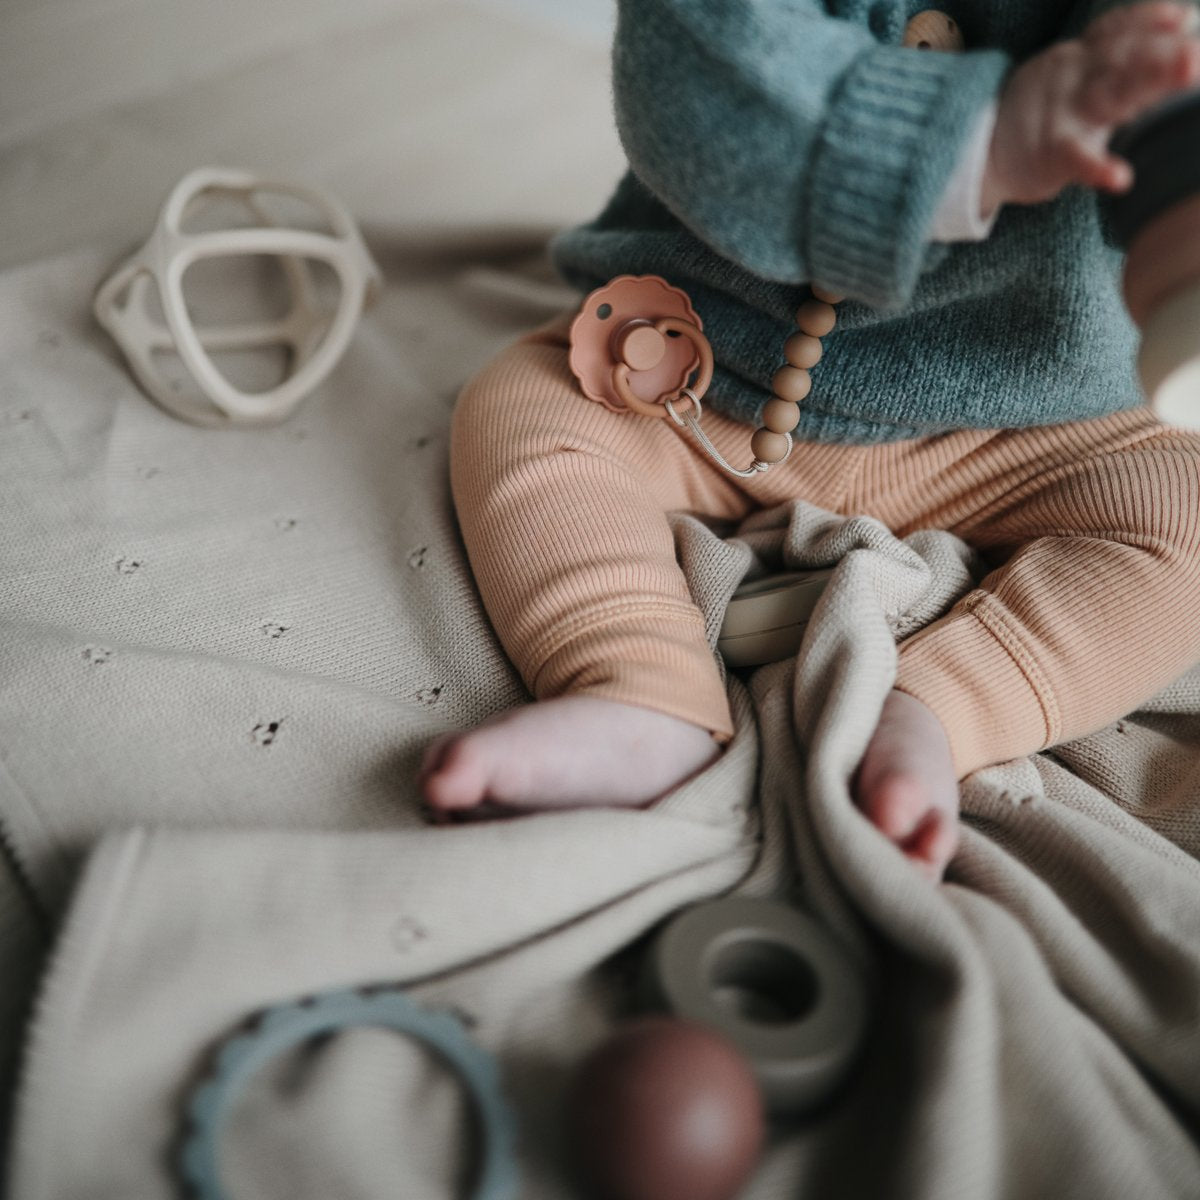 Mushie | Knitted Pointelle Baby Blanket - Gray Melange